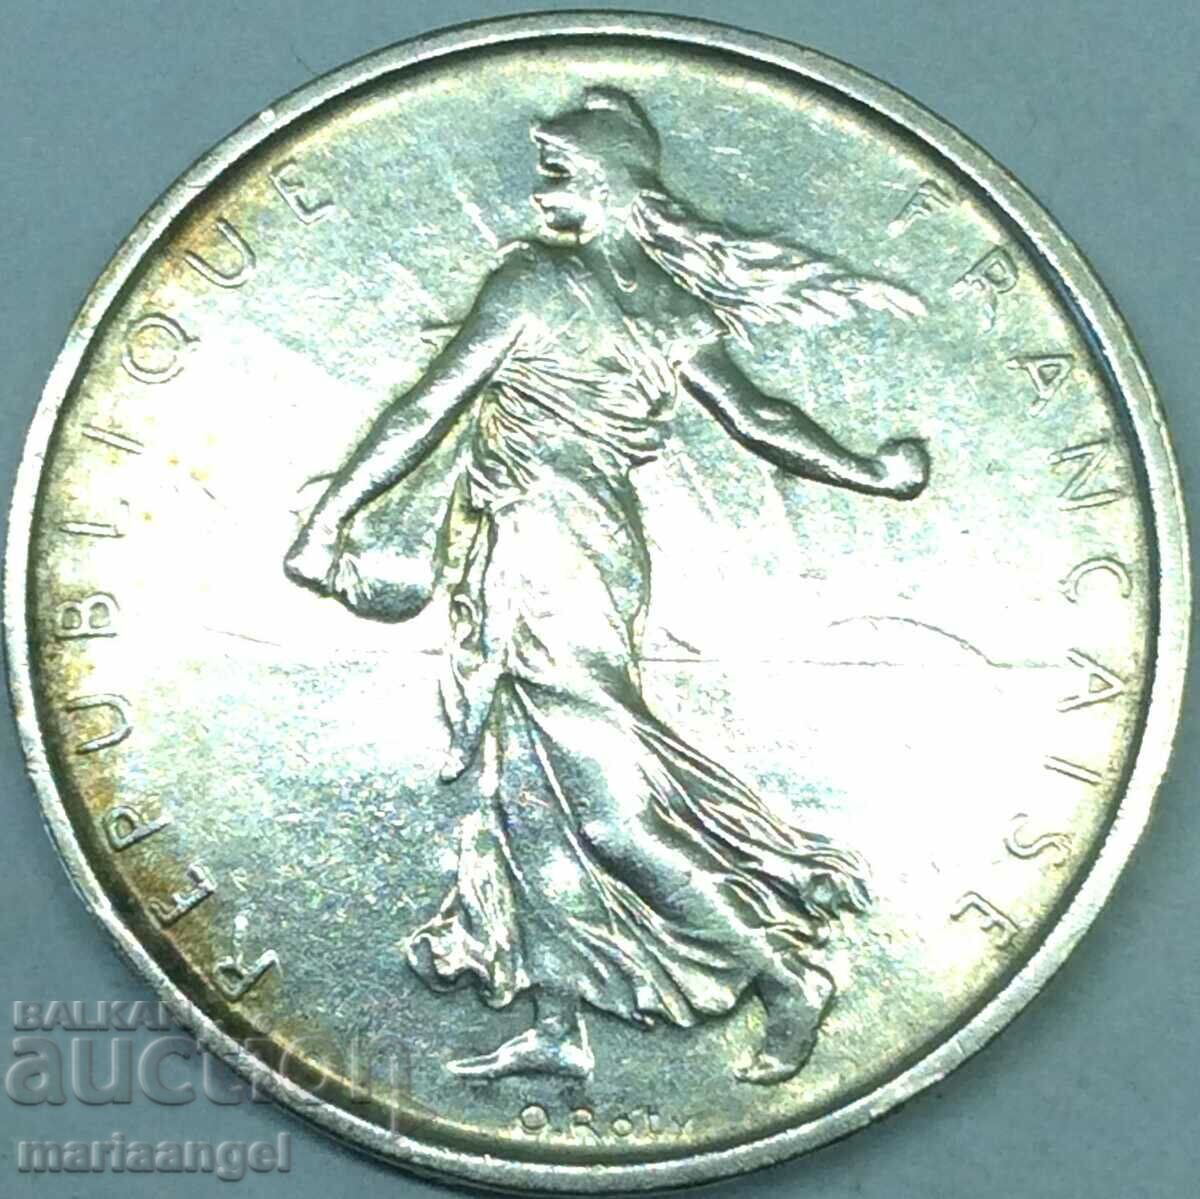 5 Francs 1963 France Silver Light Patina